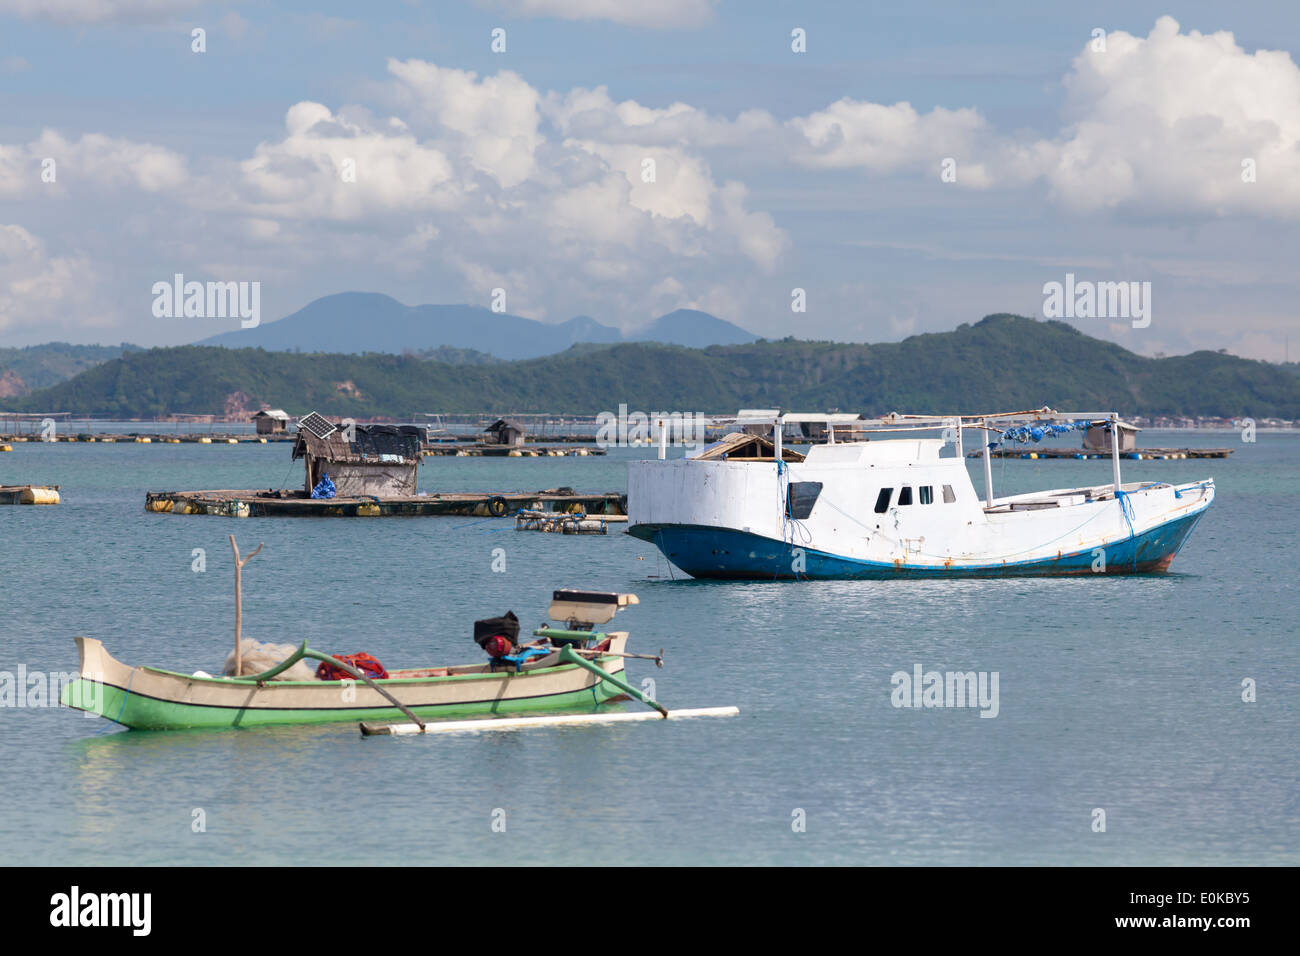 Les bateaux et les huttes flottantes (utilisée pour la culture de fruits de mer) - paysages de la Baie d'Ekas, vu de région de Ekas, Naples, Italy Banque D'Images